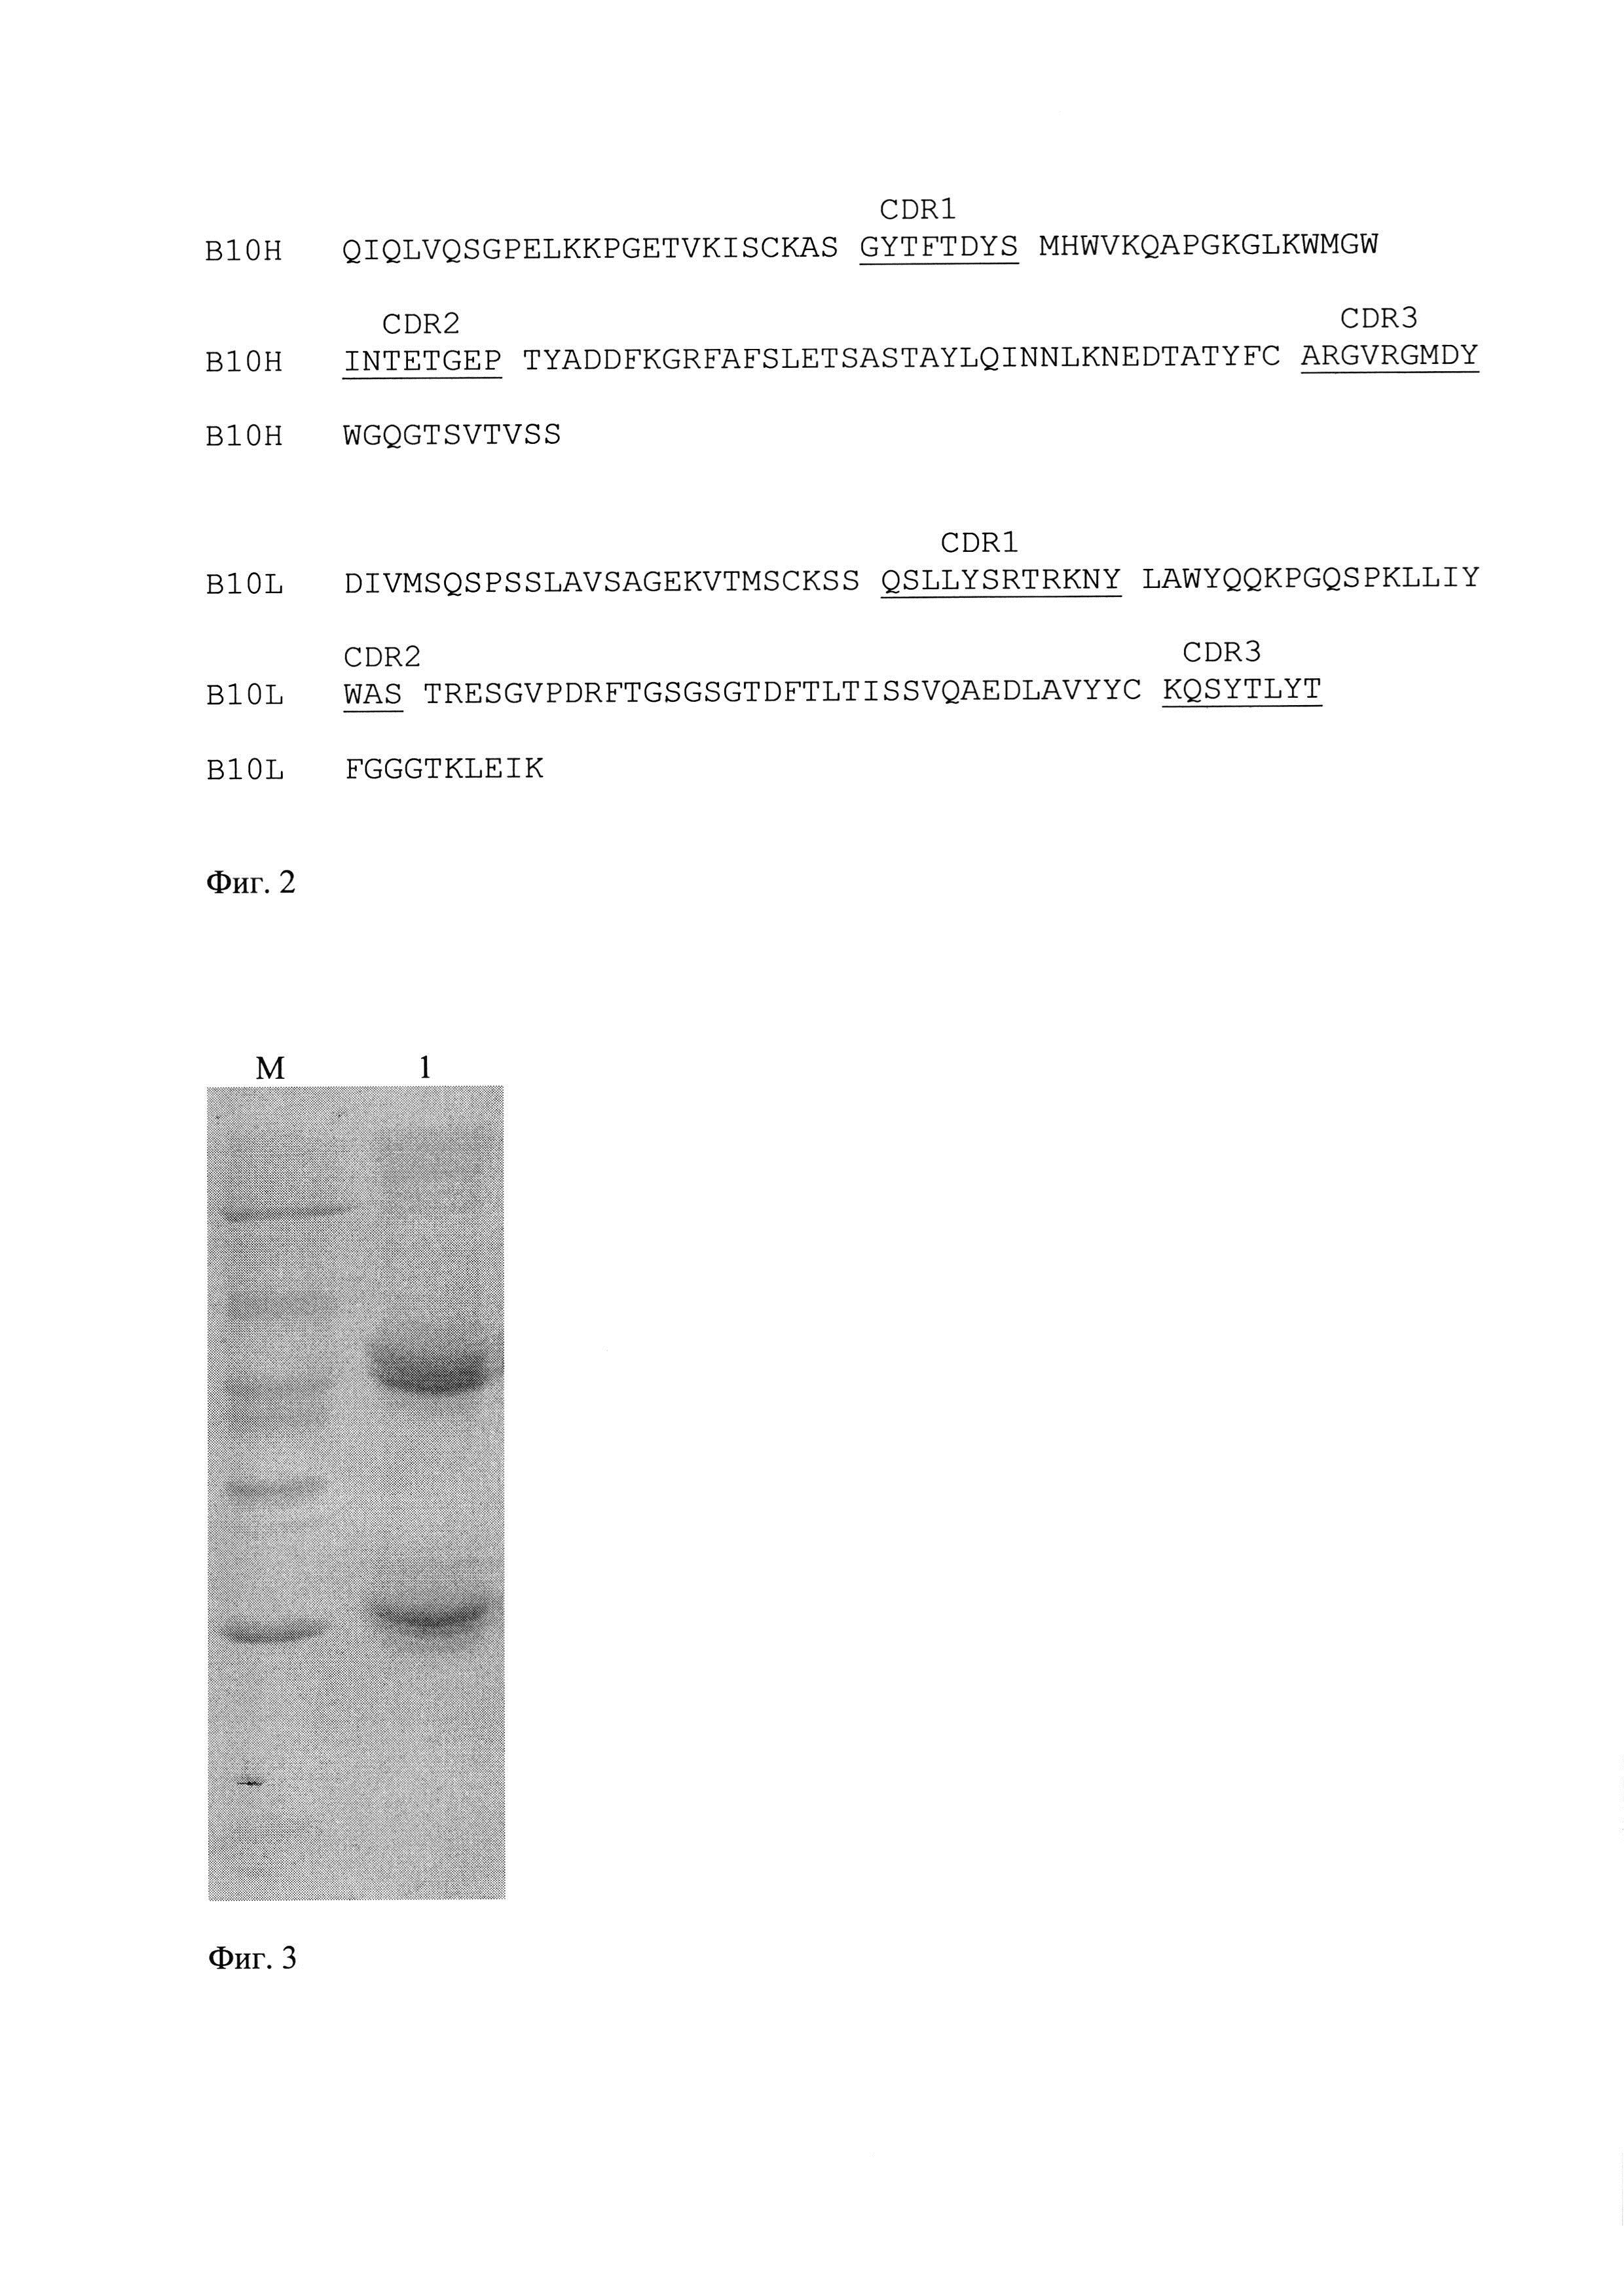 Моноклональное антитело к интерферону бета-1а человека